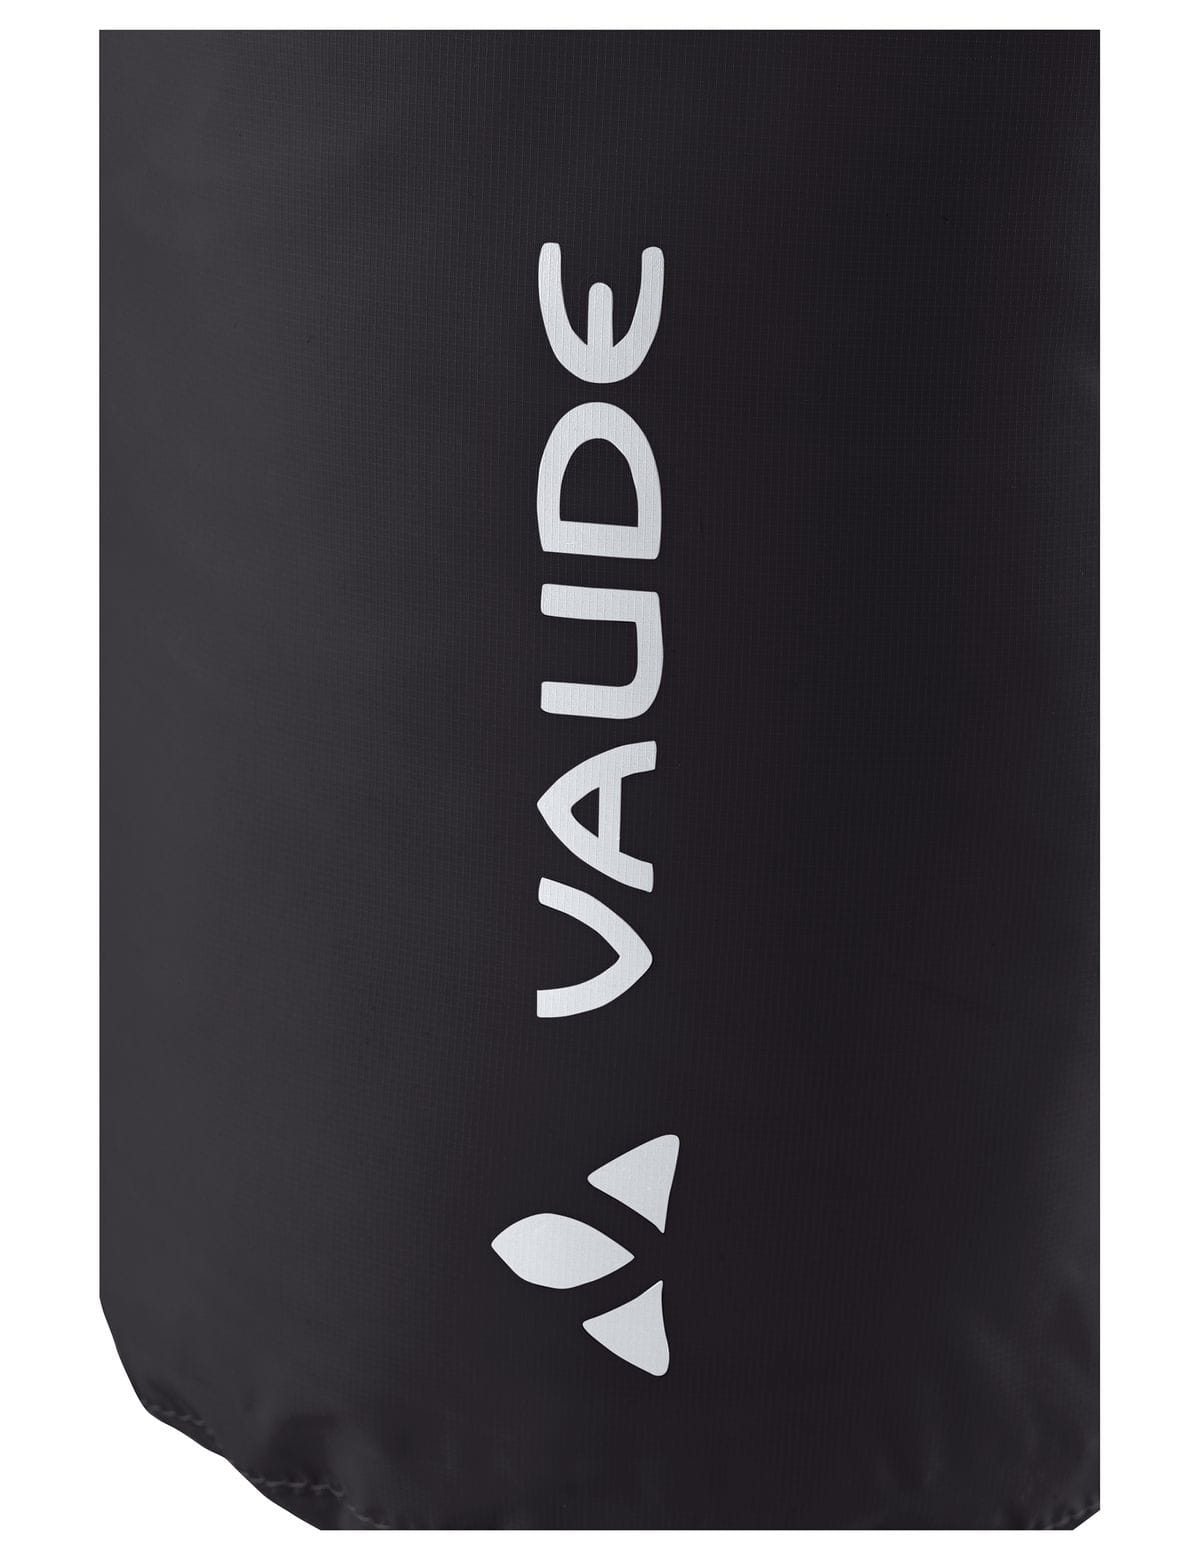 VAUDE Drybag Light Packsack